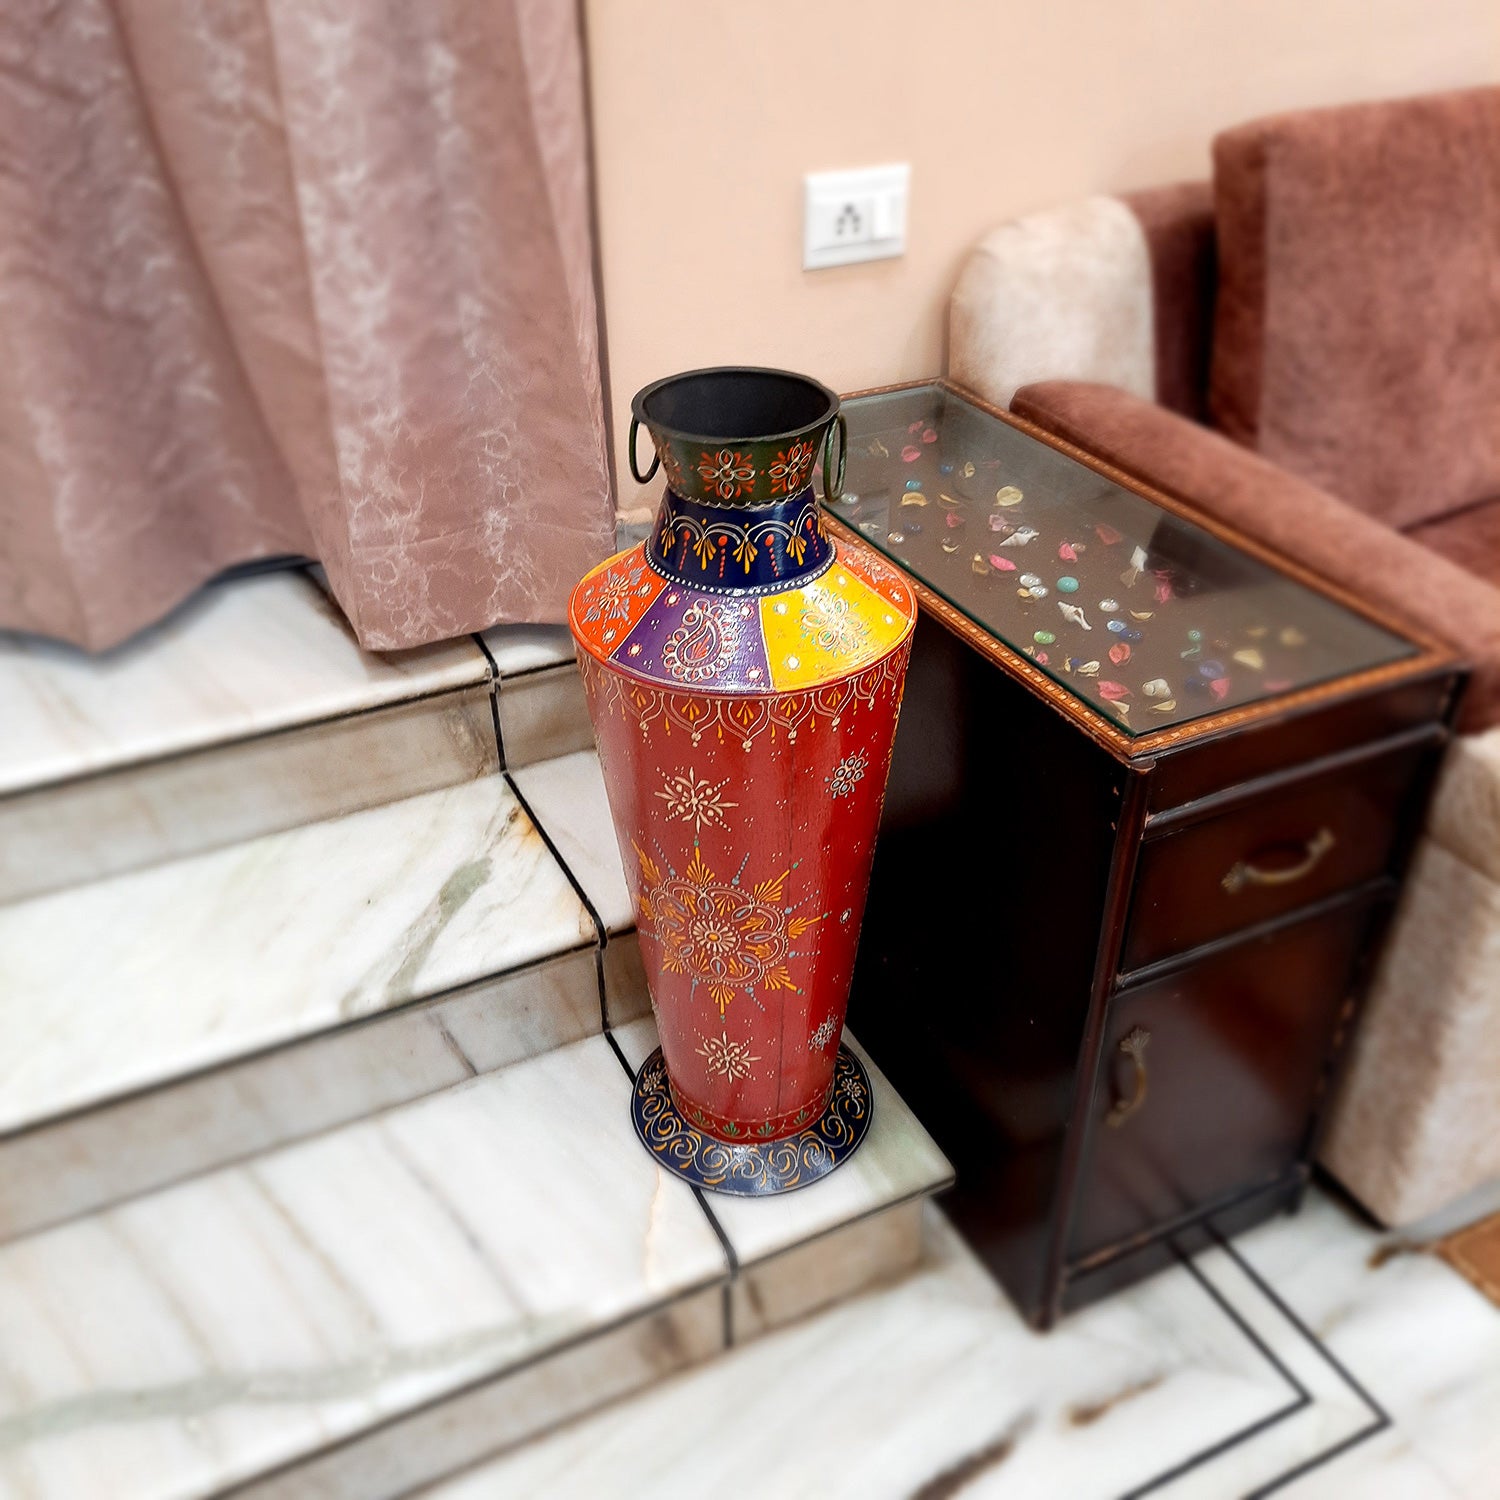 Standing Flower Pot | Big Corner Vase - For Living Room & Entrance Decor - 27 Inch - ApkaMart